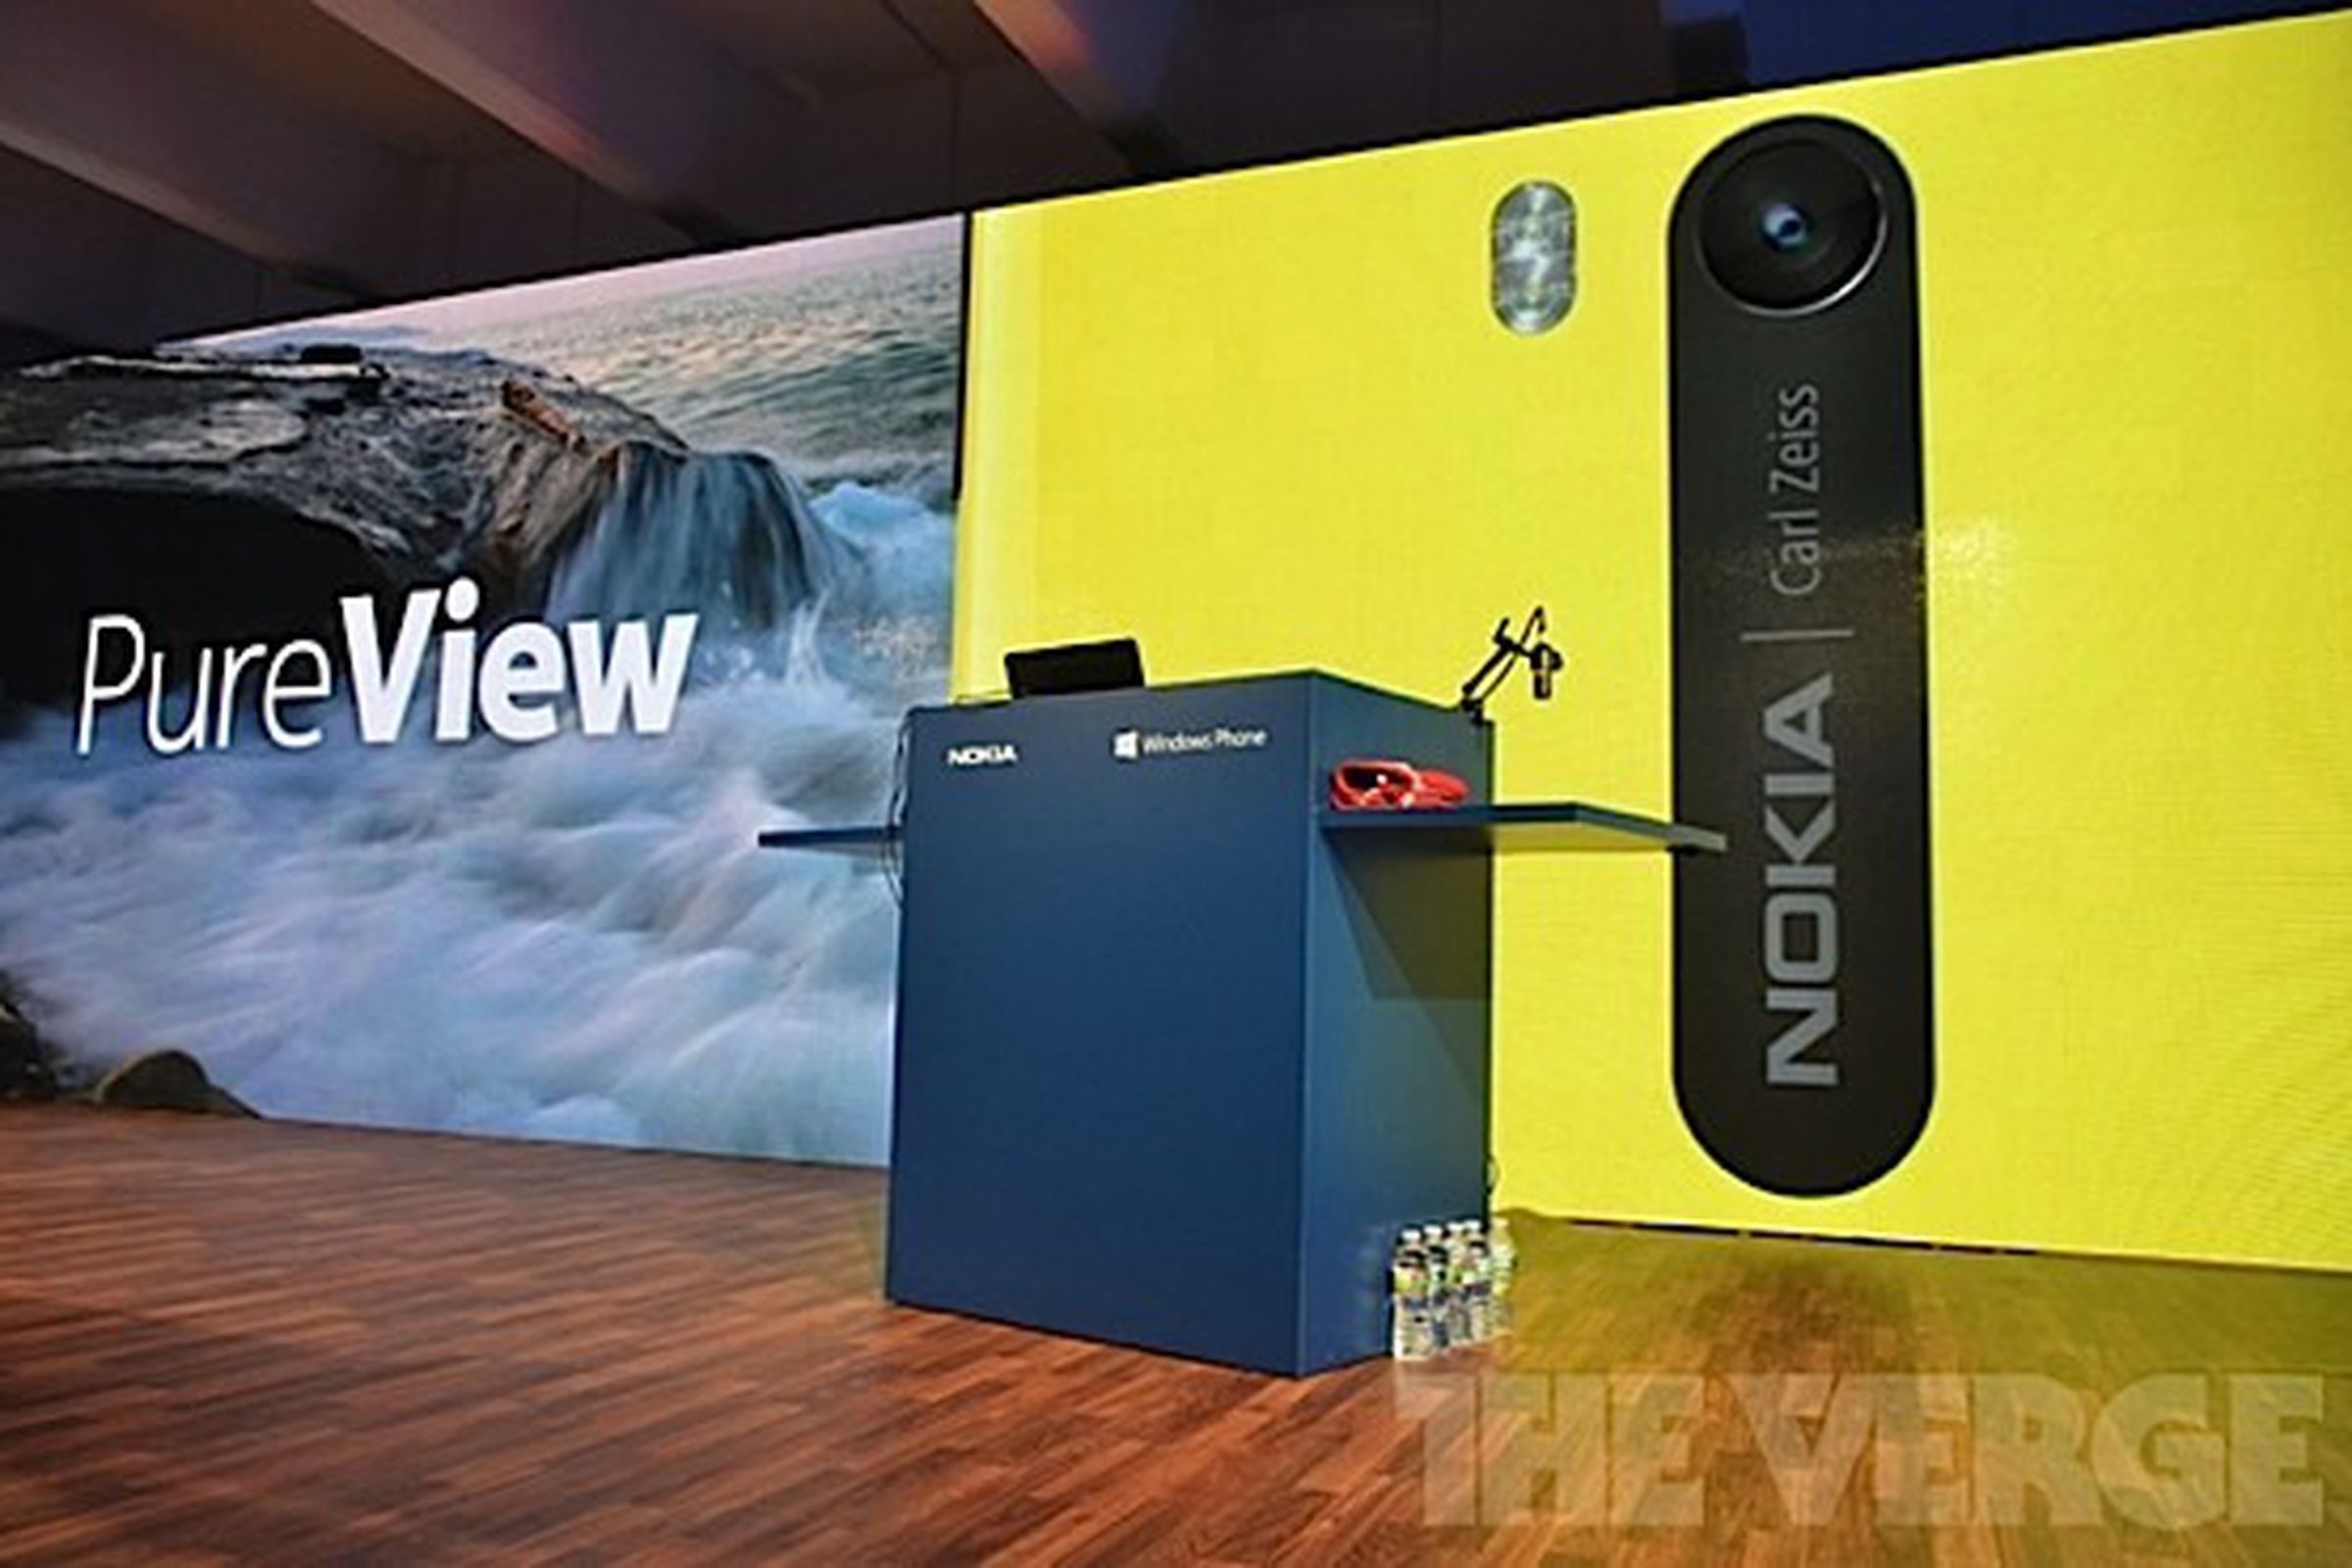 Nokia PureView on the Lumia 920